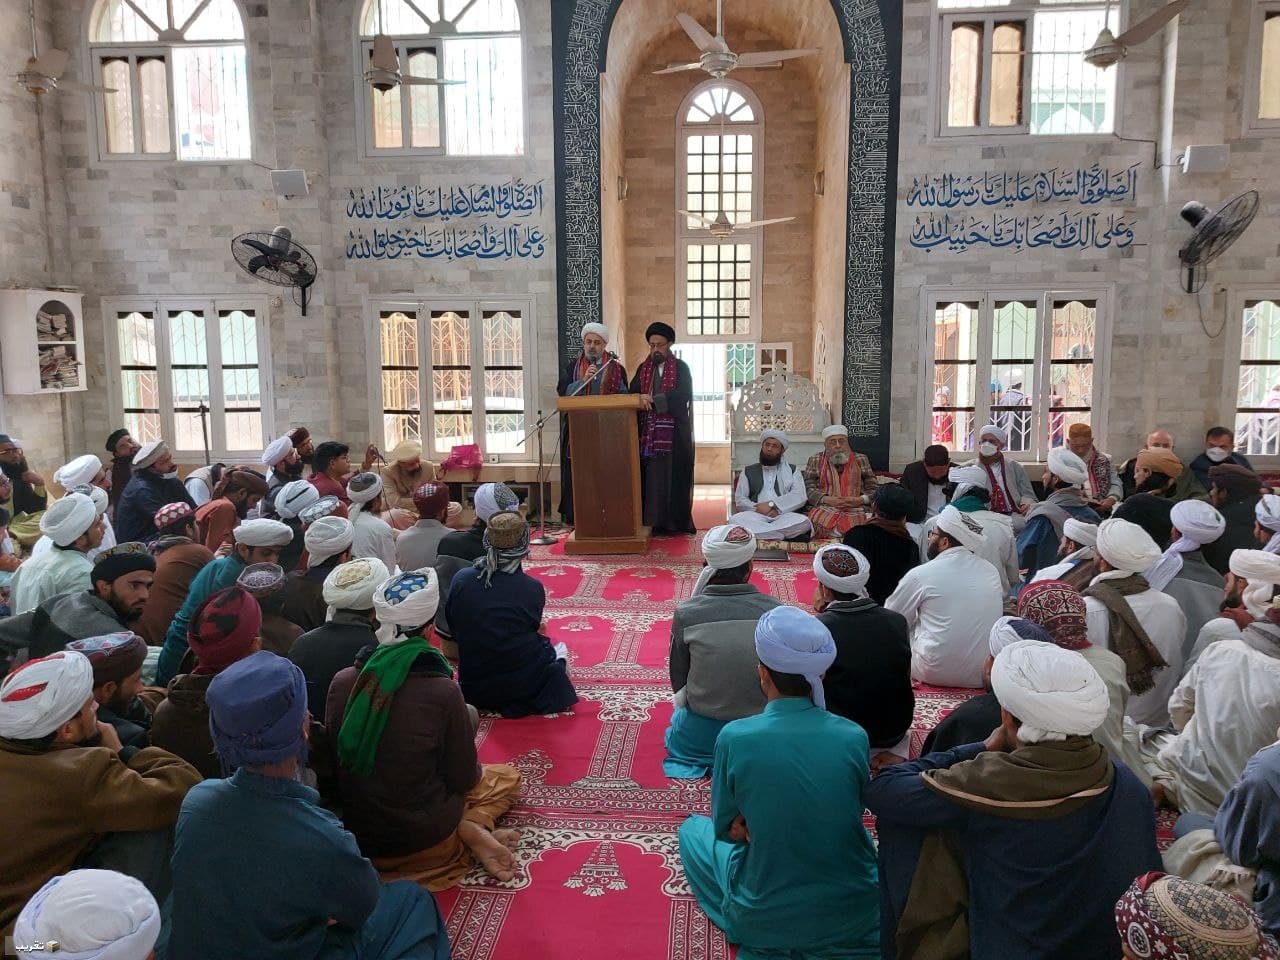 الدكتور " شهرياري"  يلقي كلمة في مسجد دار العلوم المجددية النعيمية في كراجي  